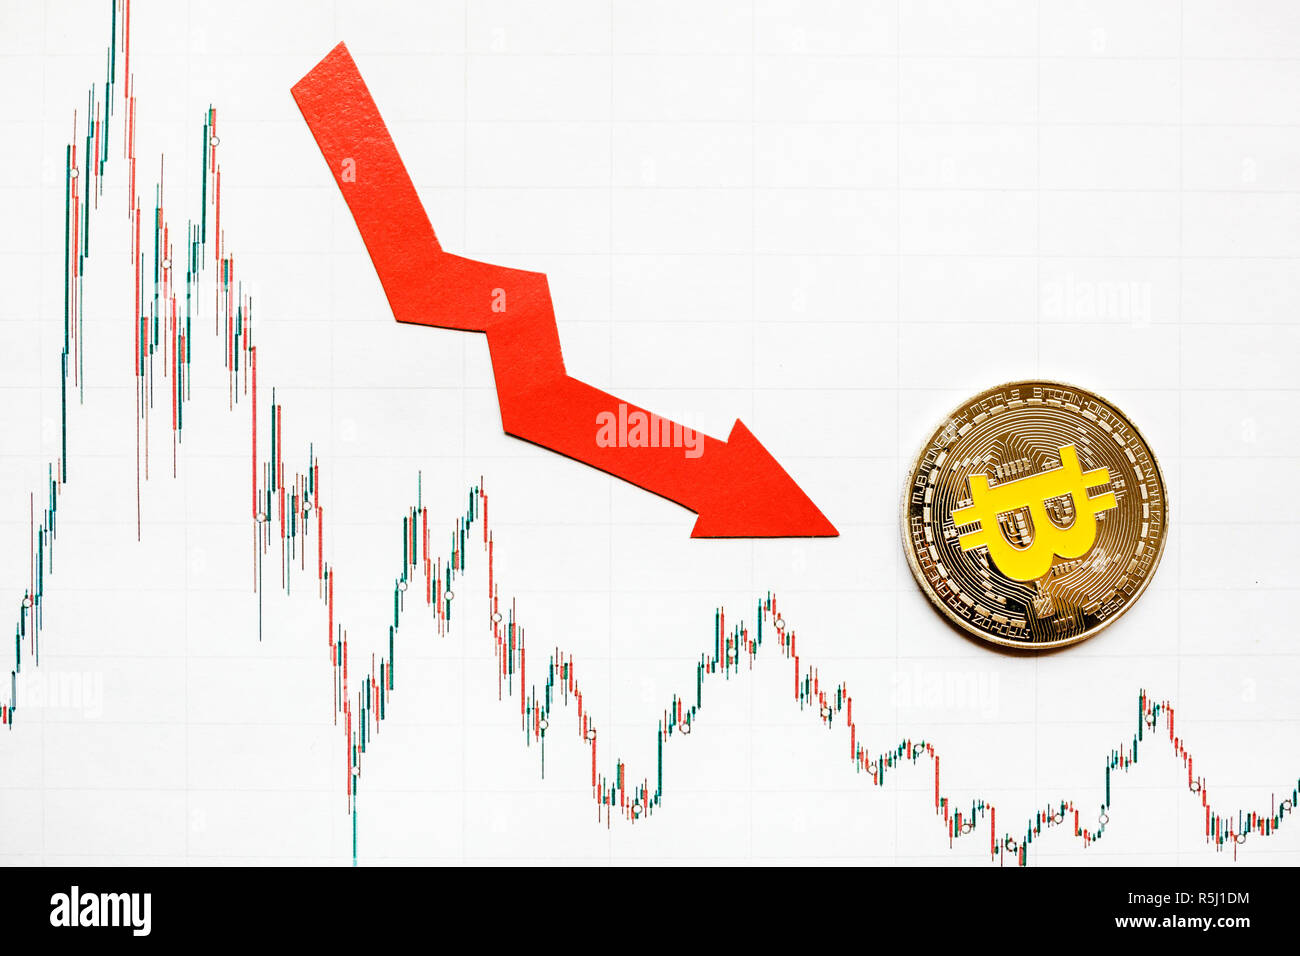 La depreciación del dinero virtual bitcoin. Flecha roja y plata sobre papel Bitcoin forex índice gráfico bajar a fondo el mercado de divisas. Concepto o Foto de stock